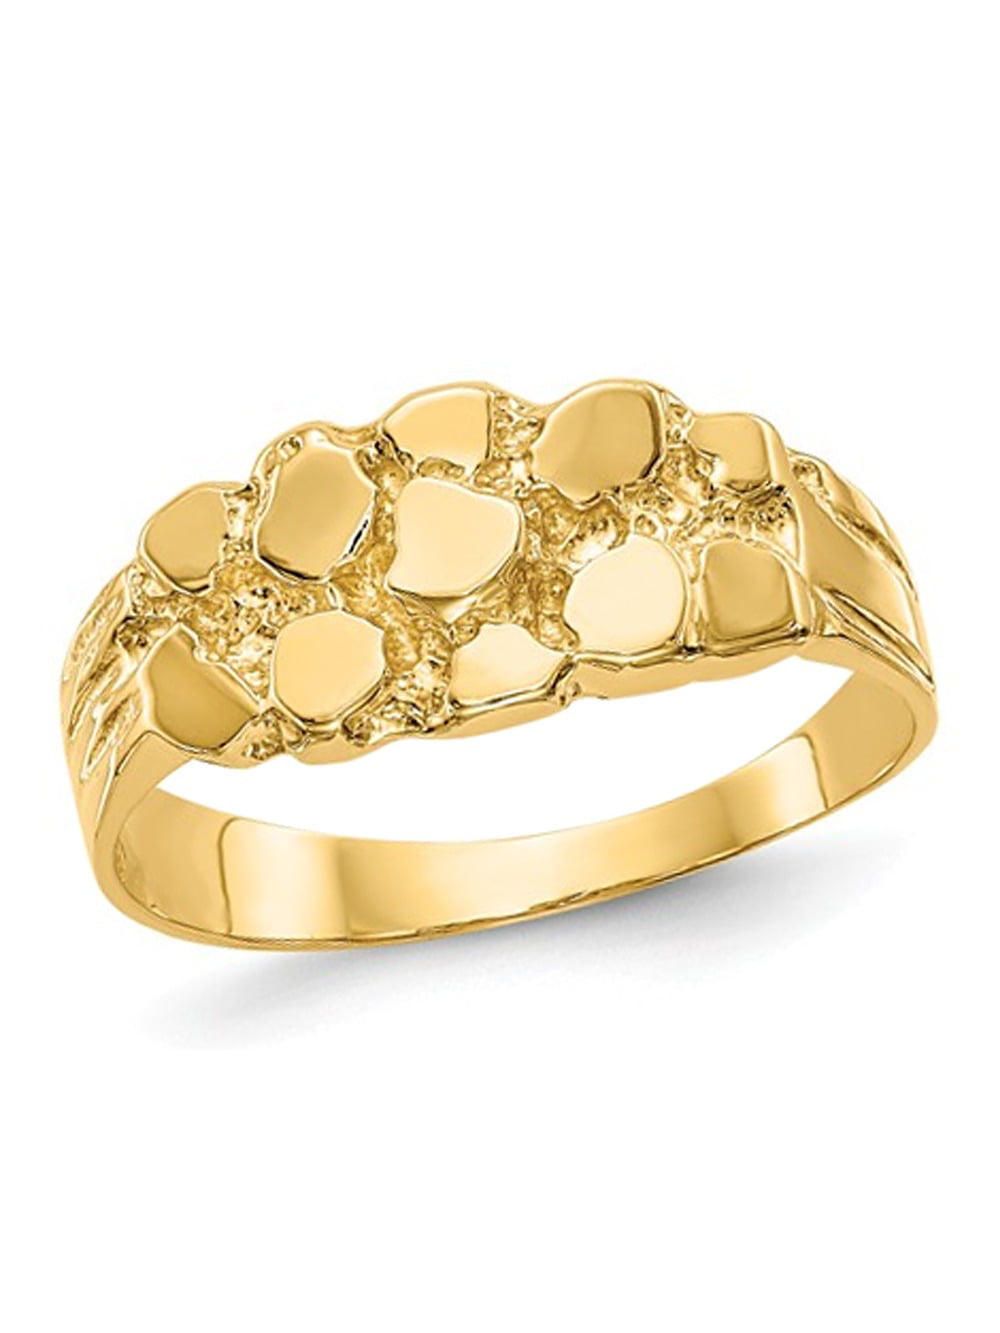 Carat gold. Золото 14 карат. Цвет золота 14 карат. Наггетс кольцо. Самородок кольцо Омега.